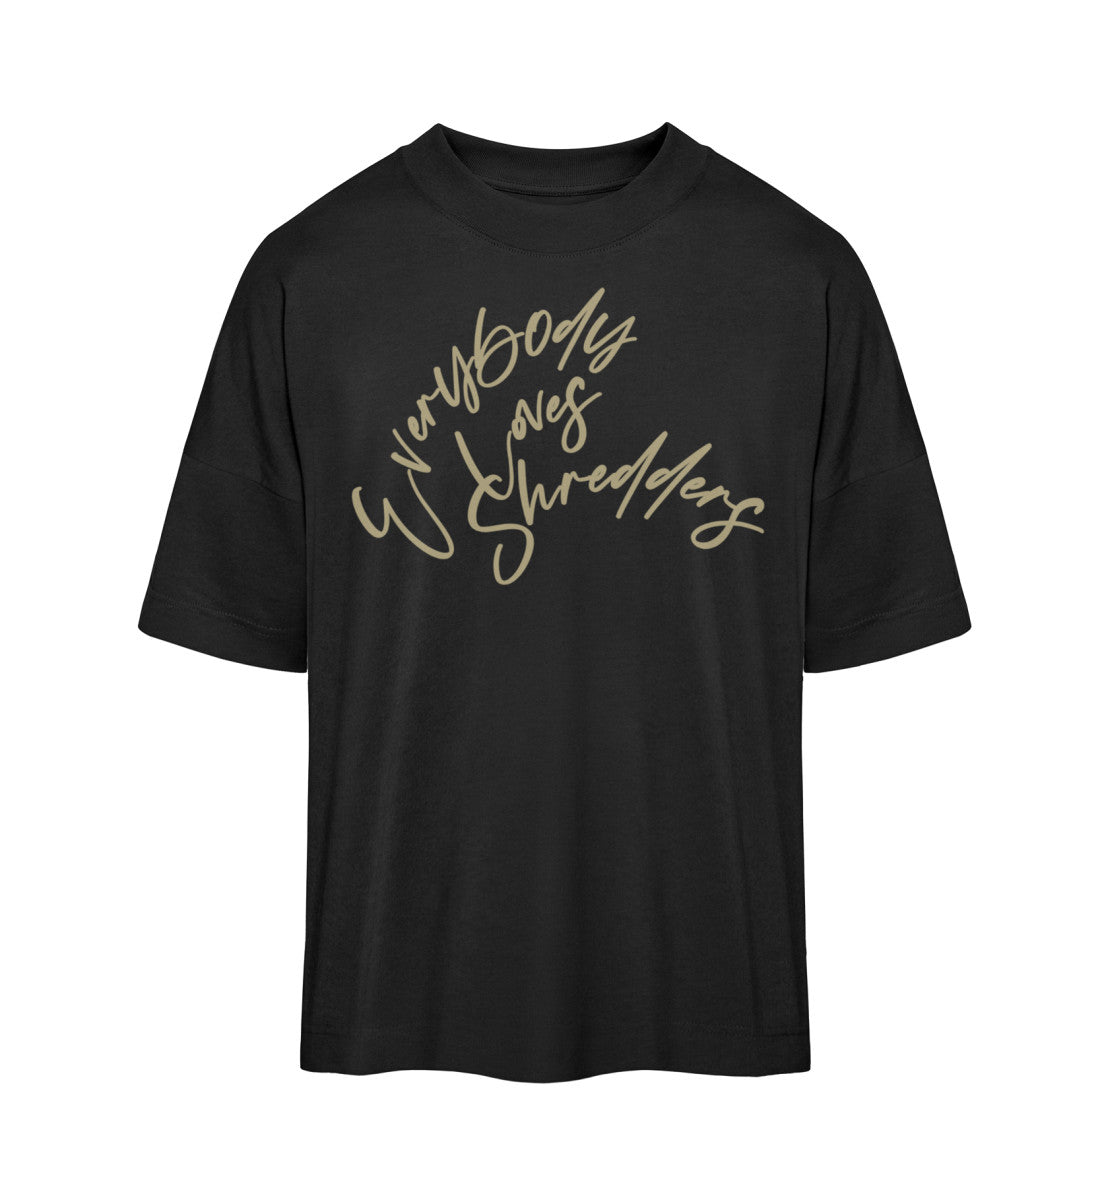 Schwarzes T-Shirt Unisex Oversize Fit für Frauen und Männer bedruckt mit dem Design der Roger Rockawoo Clothing Everybody loves Shredder